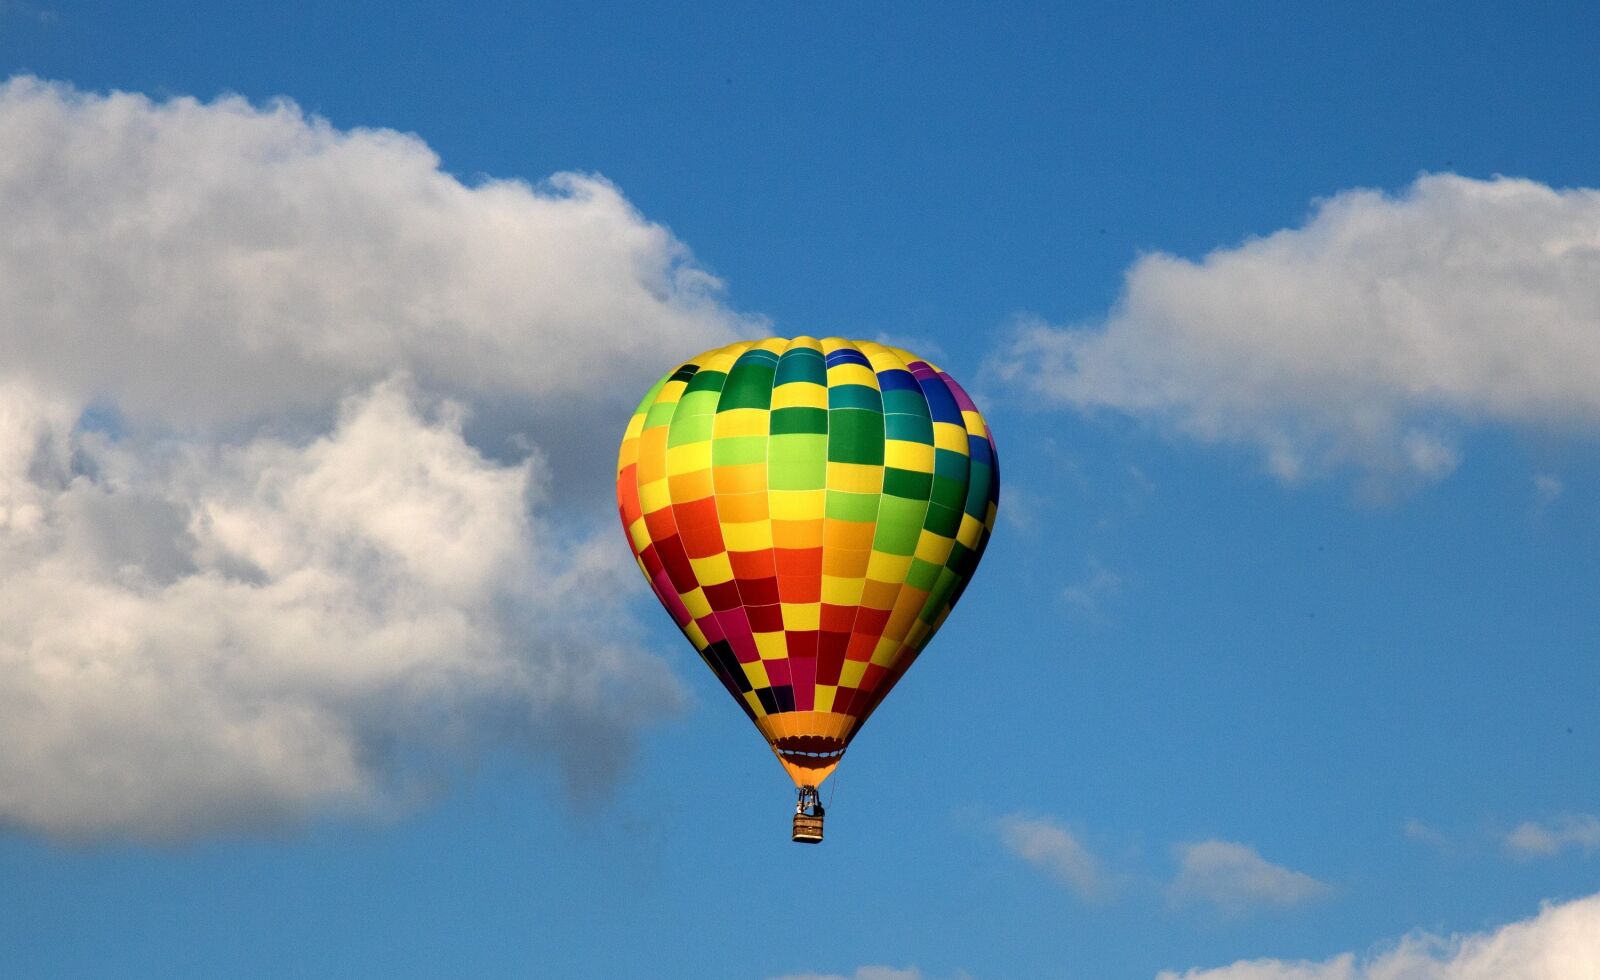 Canon EOS 760D (EOS Rebel T6s / EOS 8000D) sample photo. Balloon, hot air, rising photography